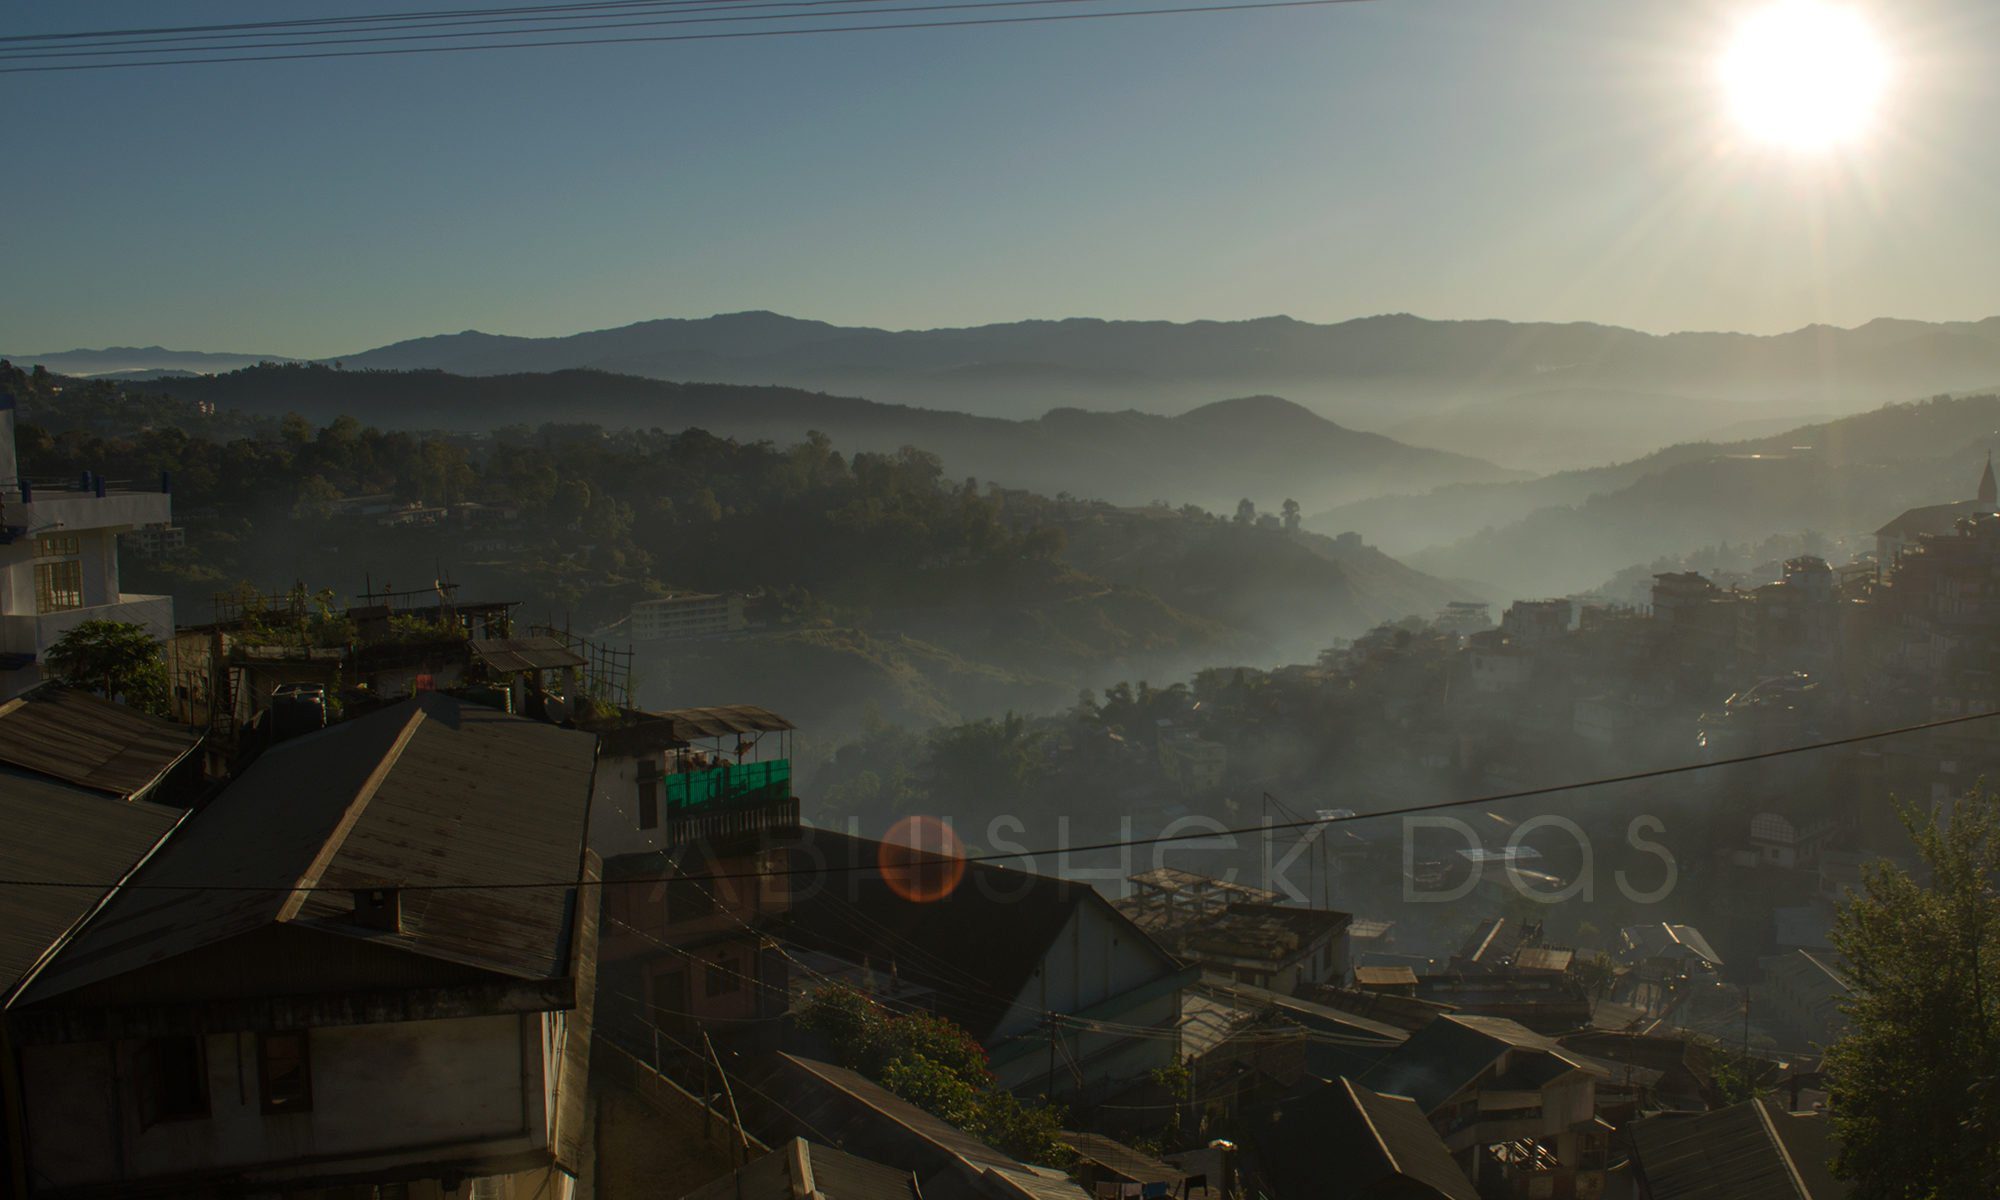 Nagaland "The Land of Nagas"